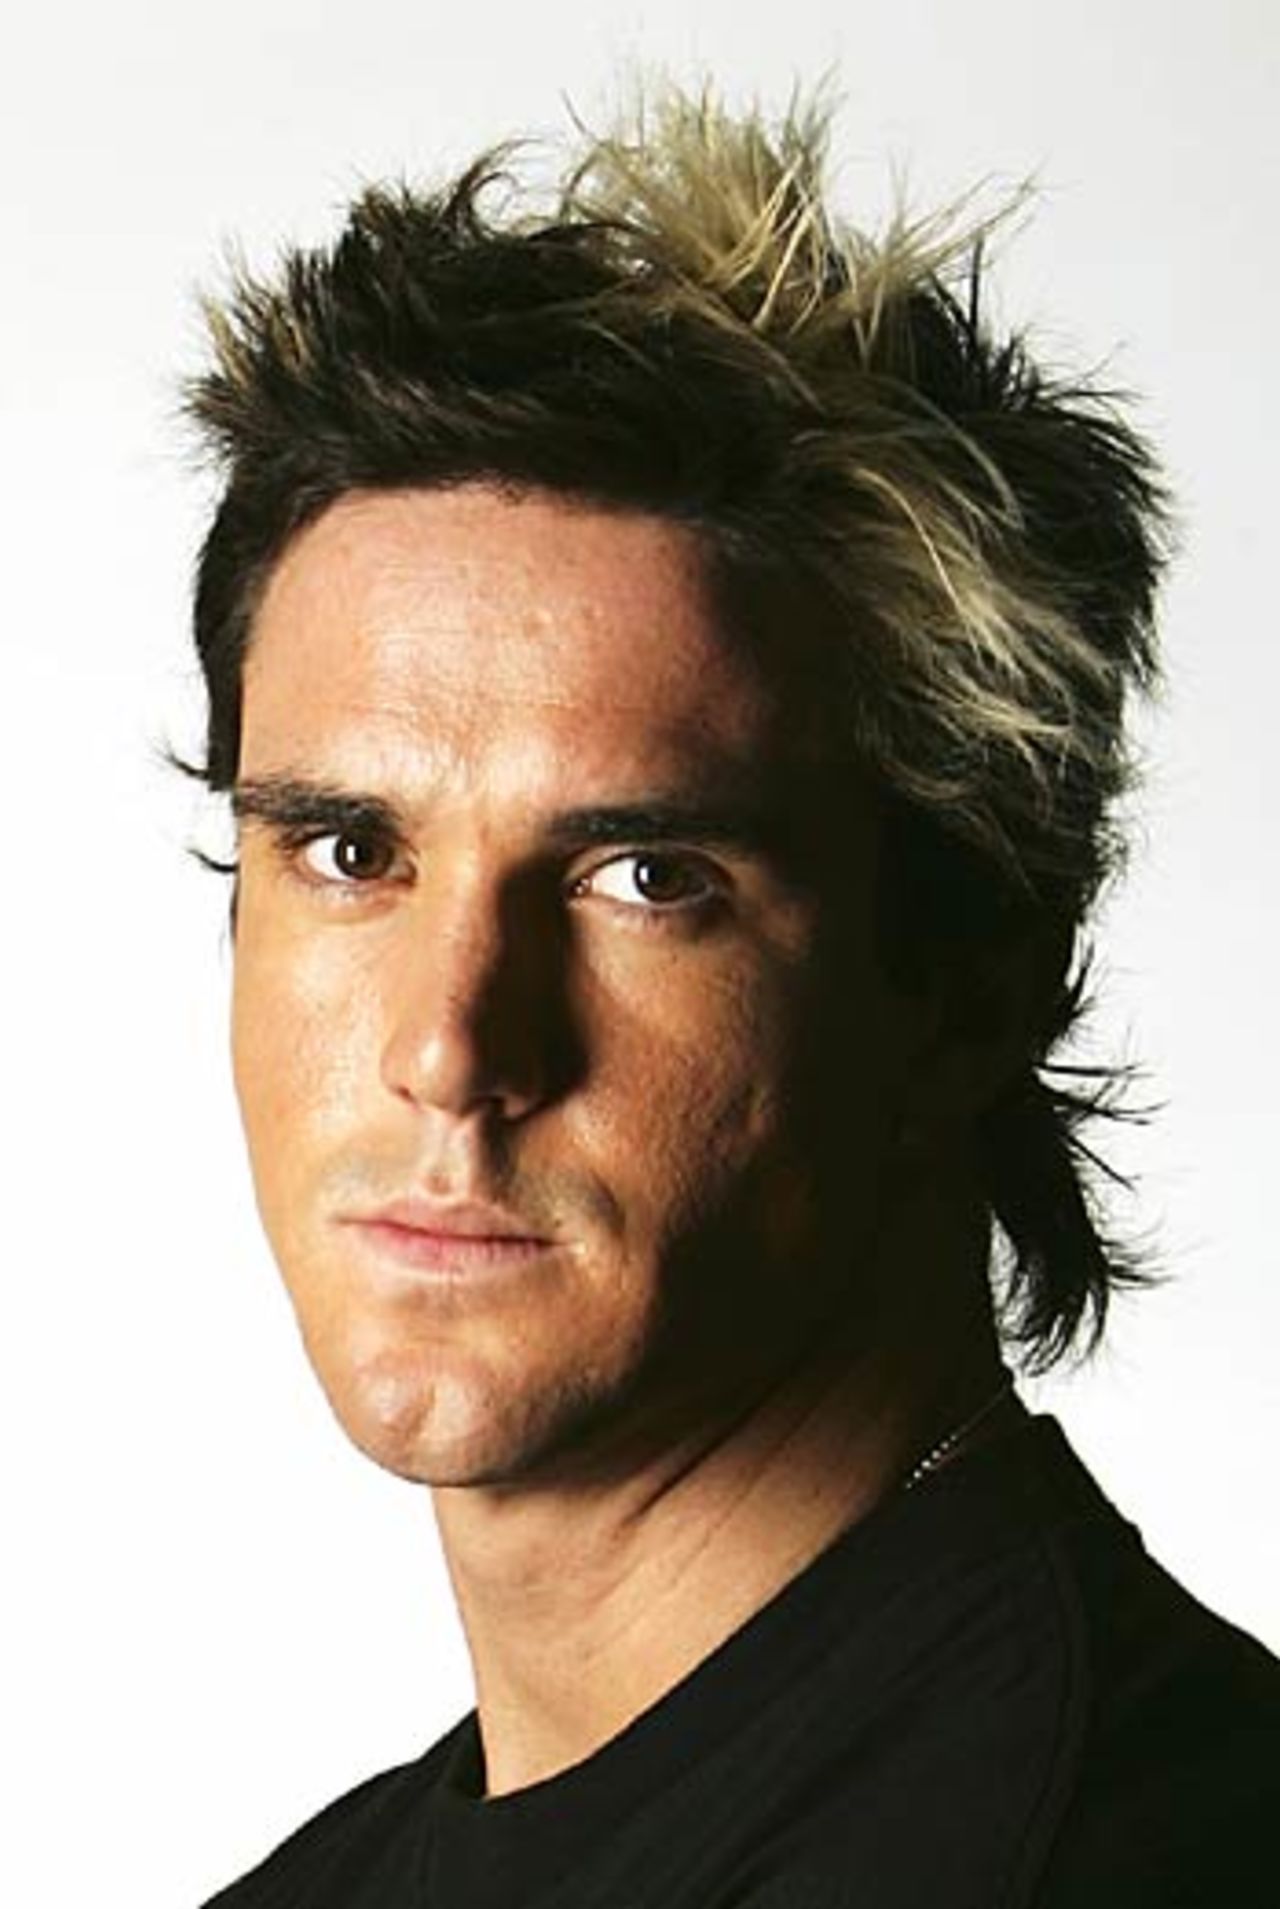 Kevin Pietersen looks hard